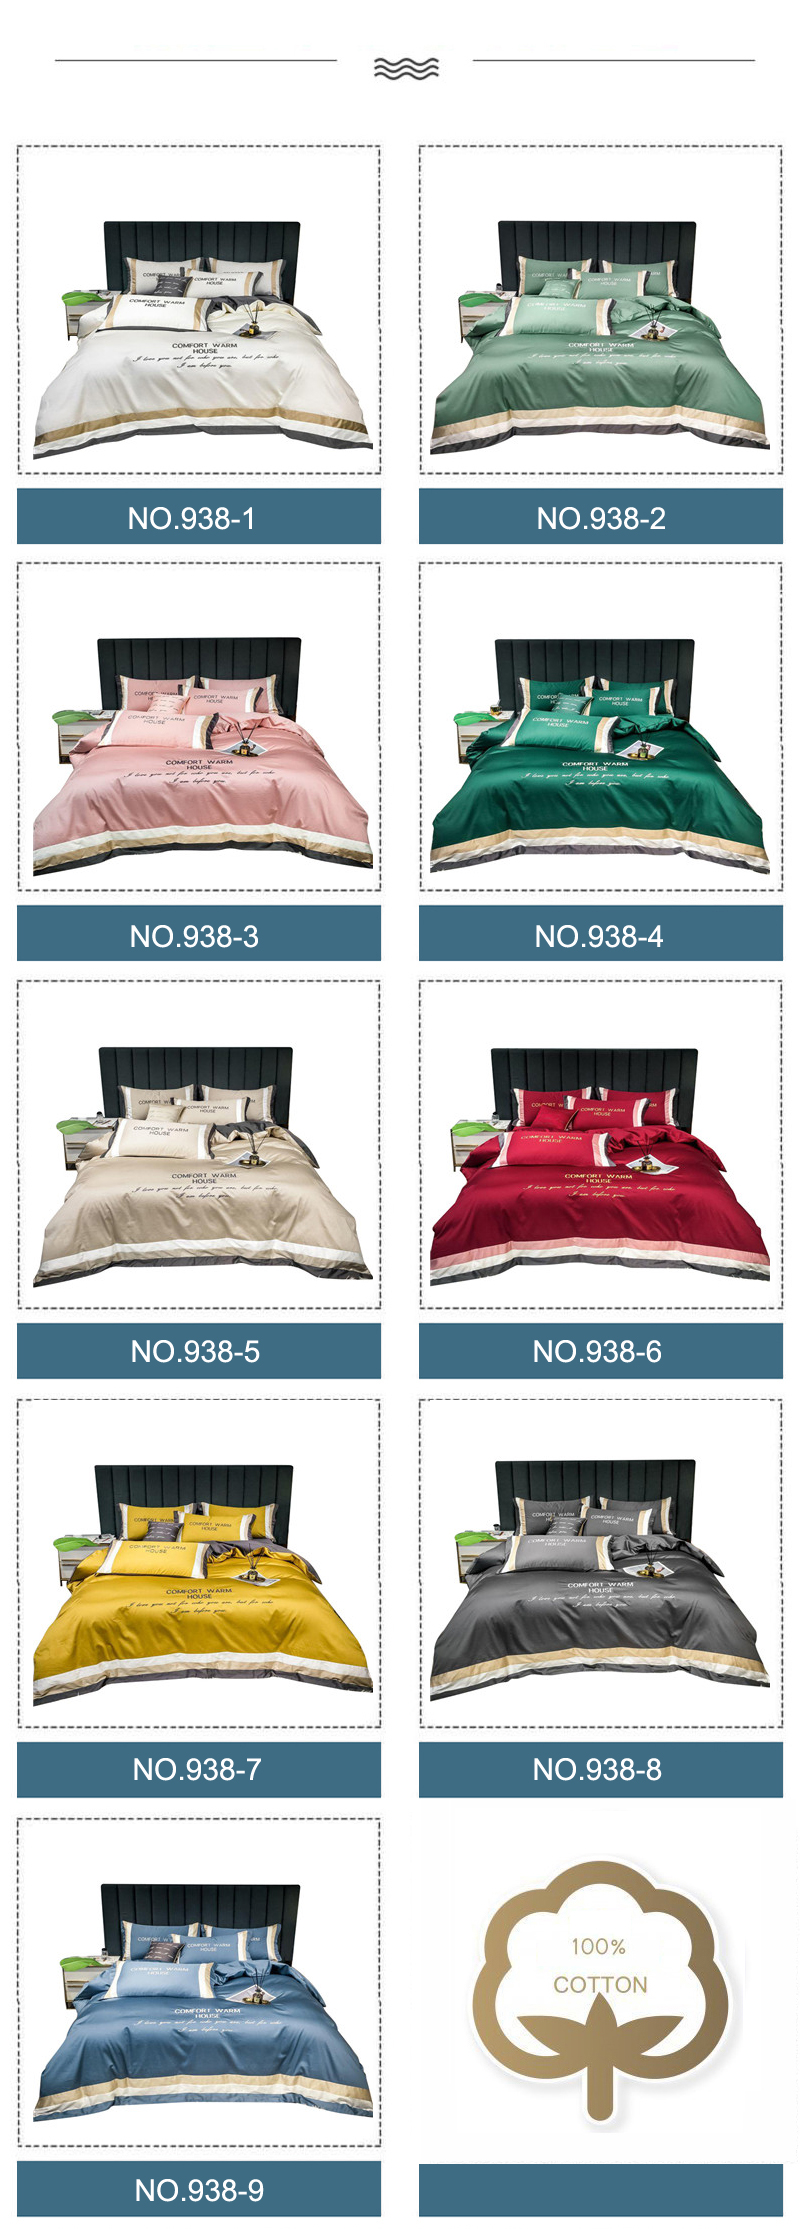 Bed Linen 4PCS Superior Quality